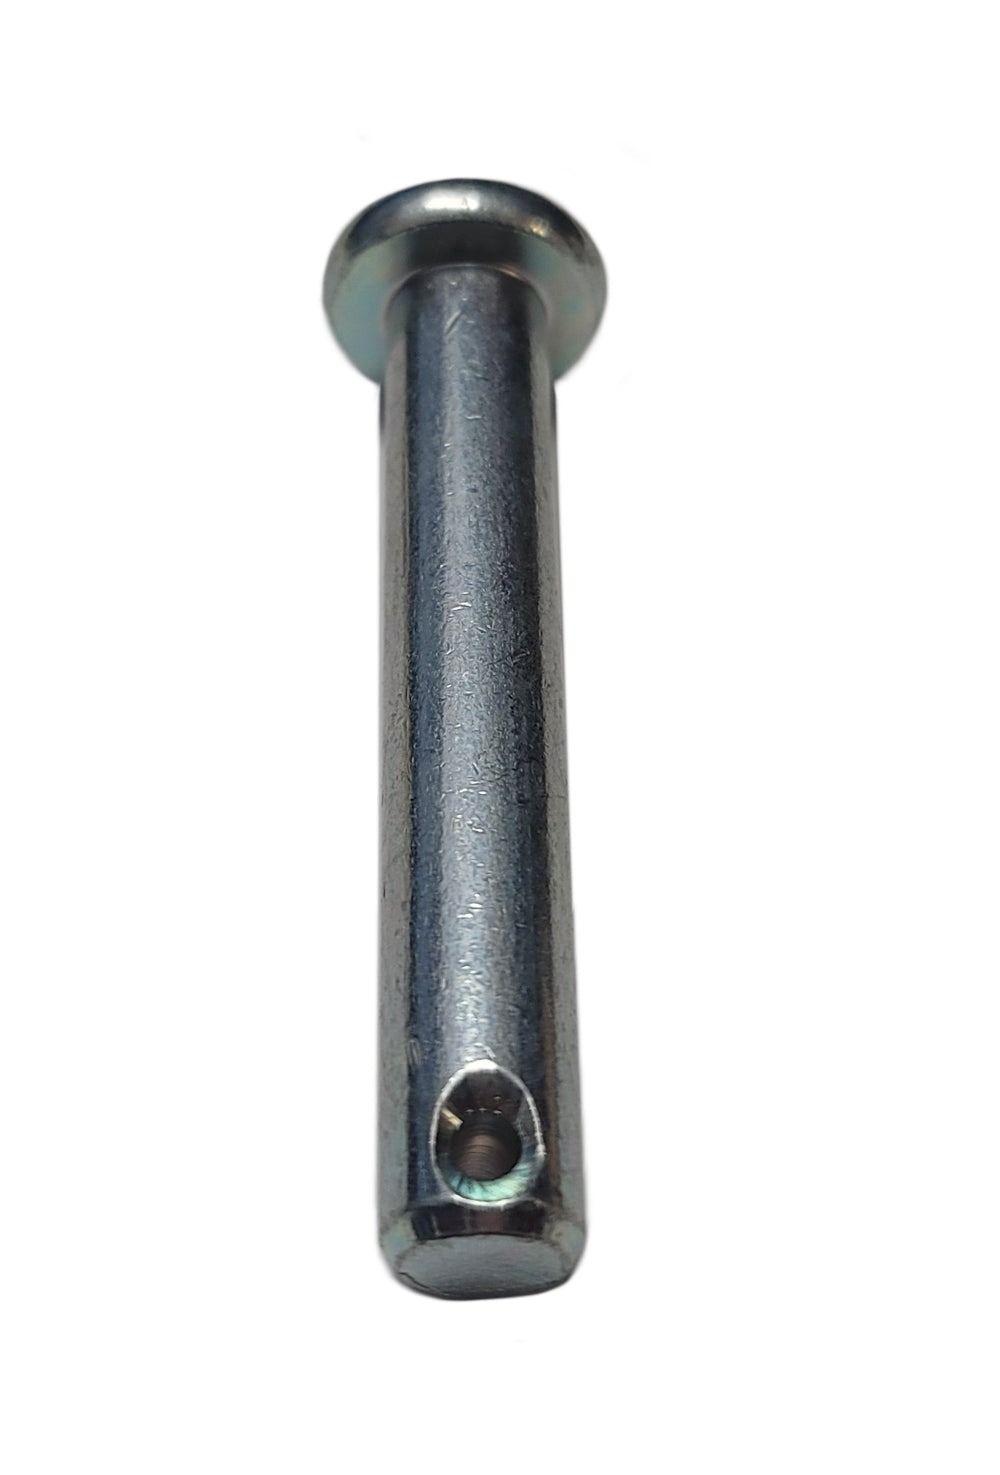 John Deere Original Equipment Pin Fastener - 45M7040